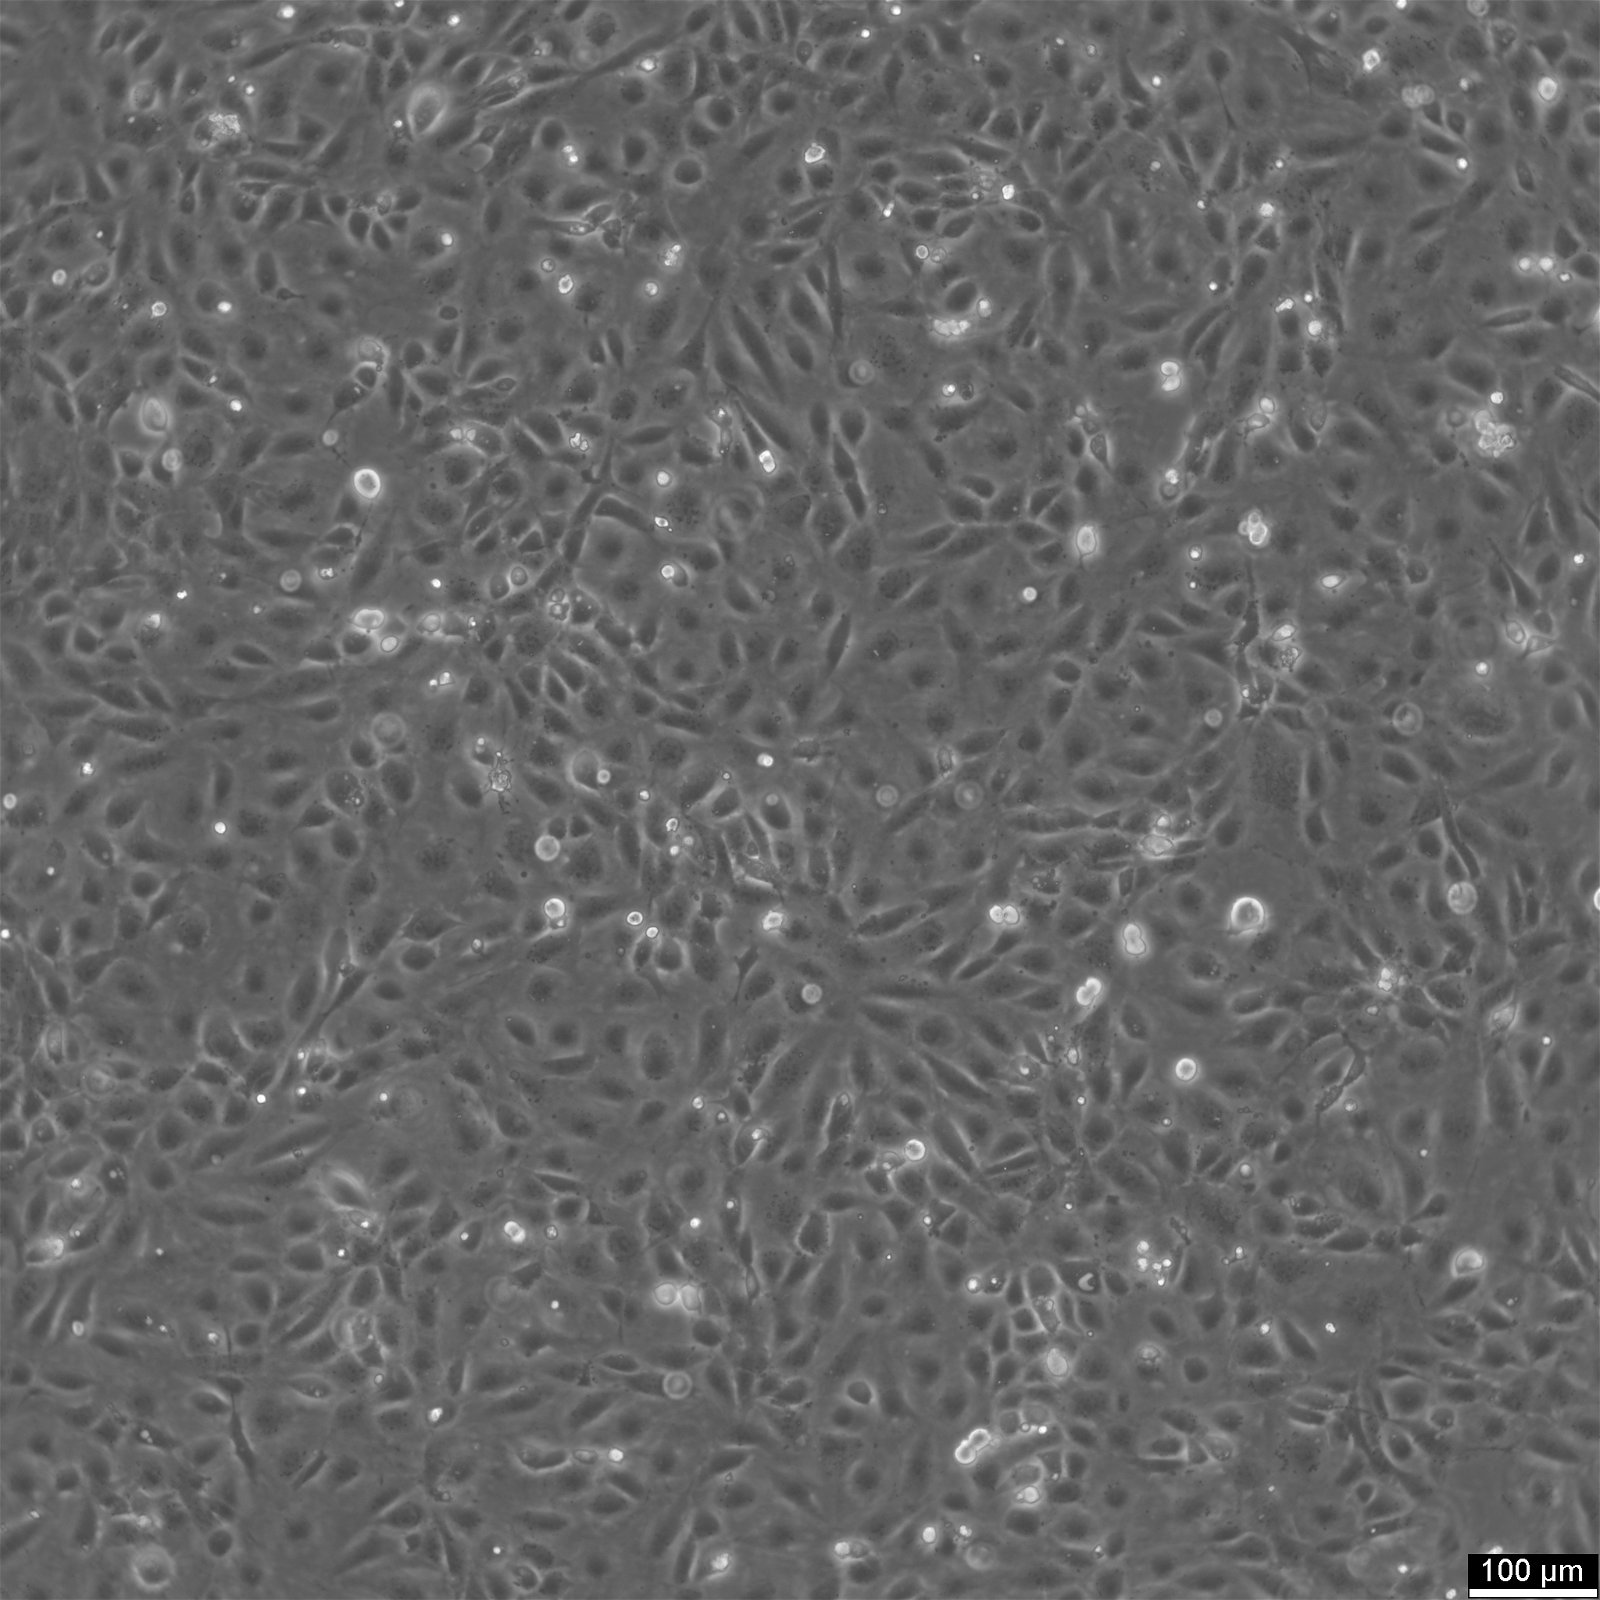 SVEC4-10 Cells